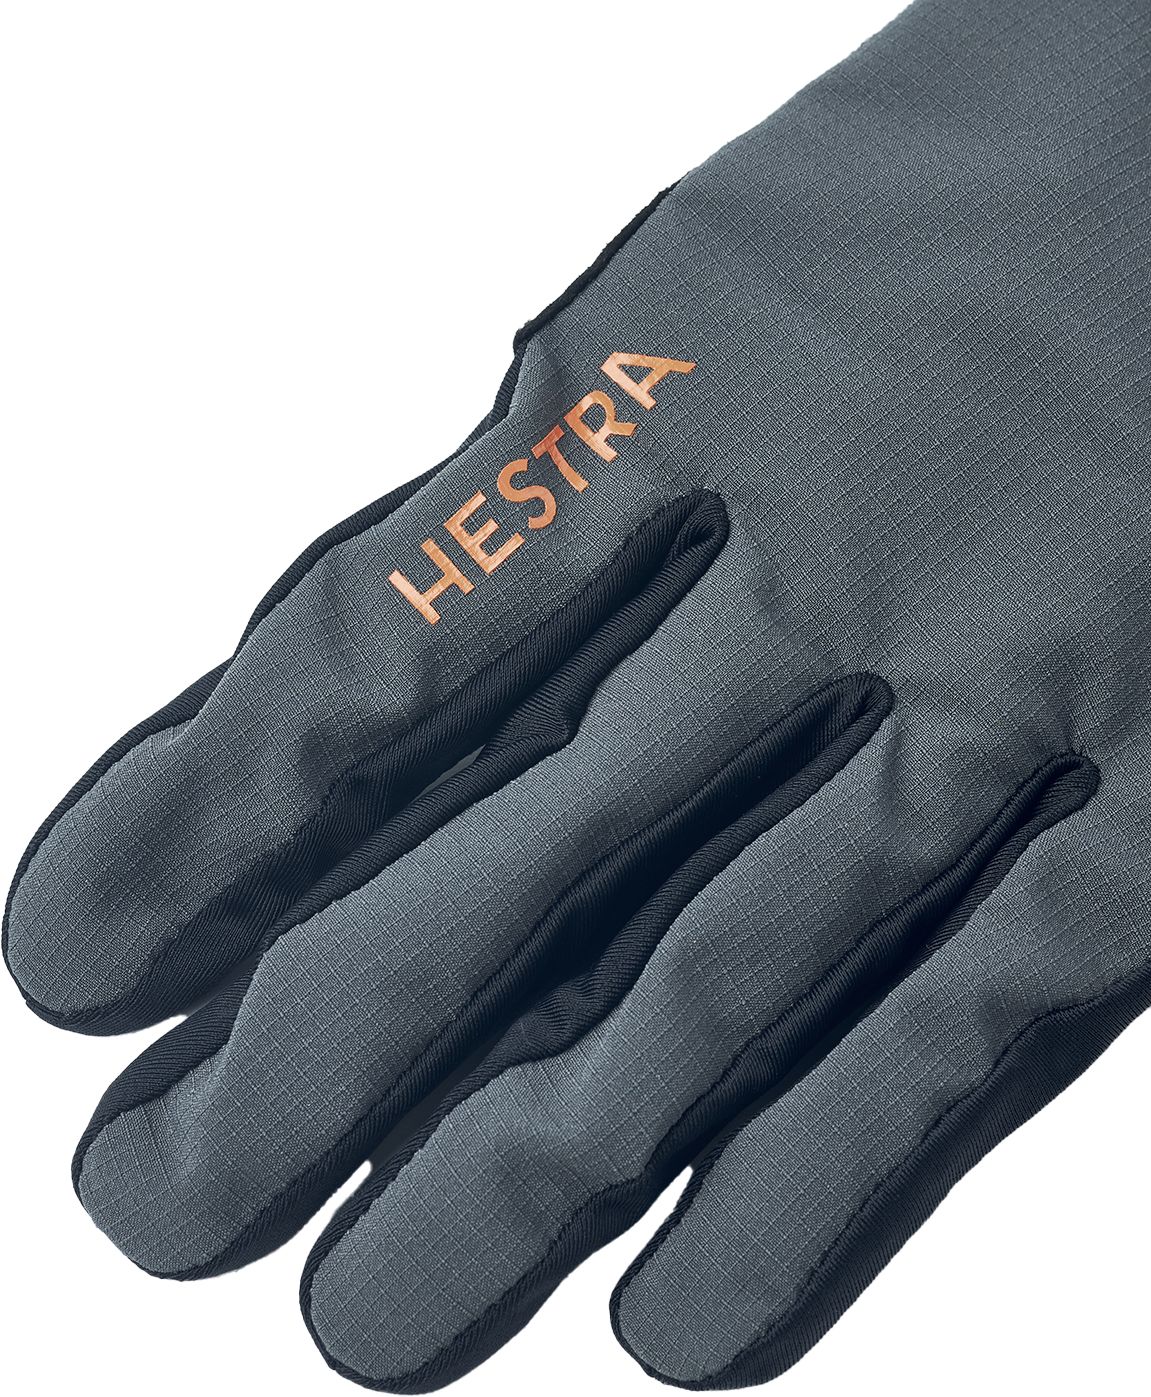 HESTRA, Bike Guard Long - 5 finger